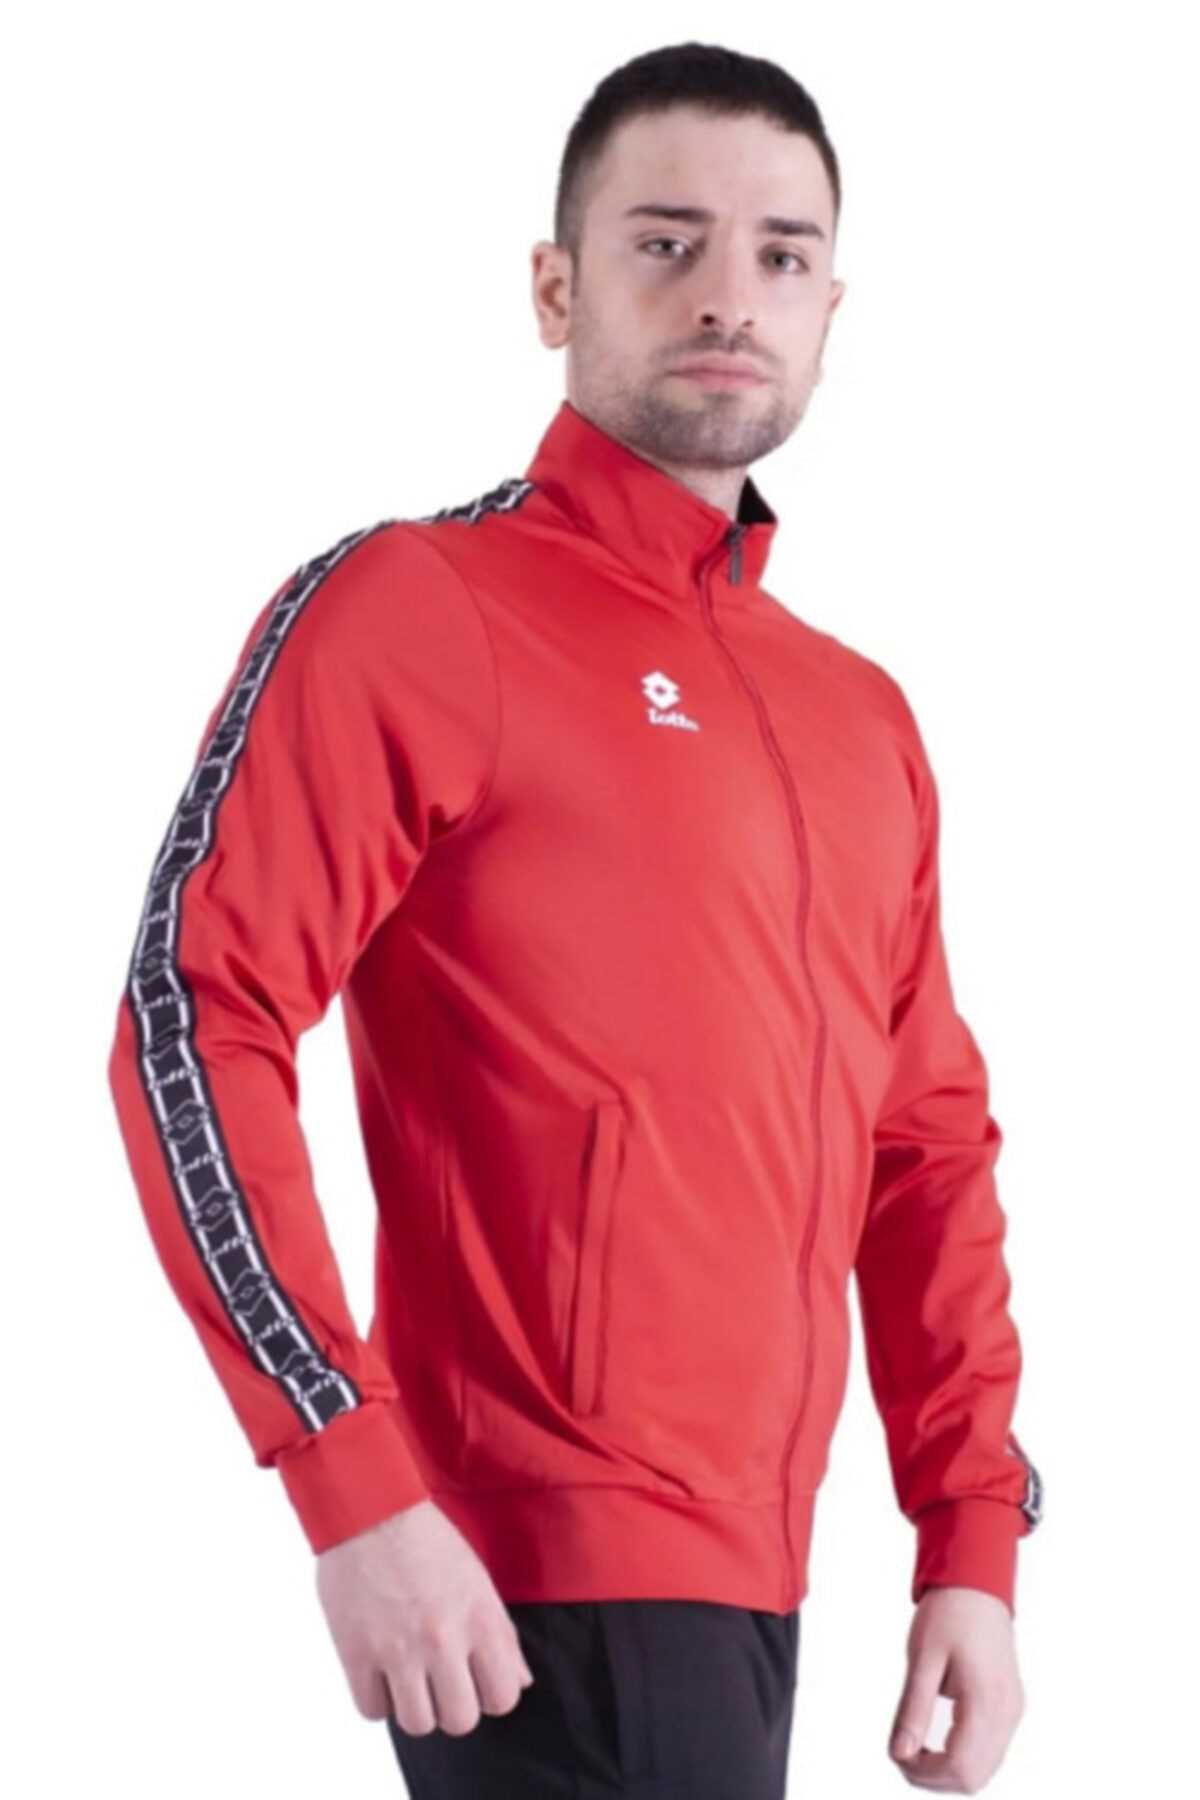 خرید انلاین ست گرمکن و شلوار ورزشی مردانه برند لوتو رنگ قرمز ty50957244